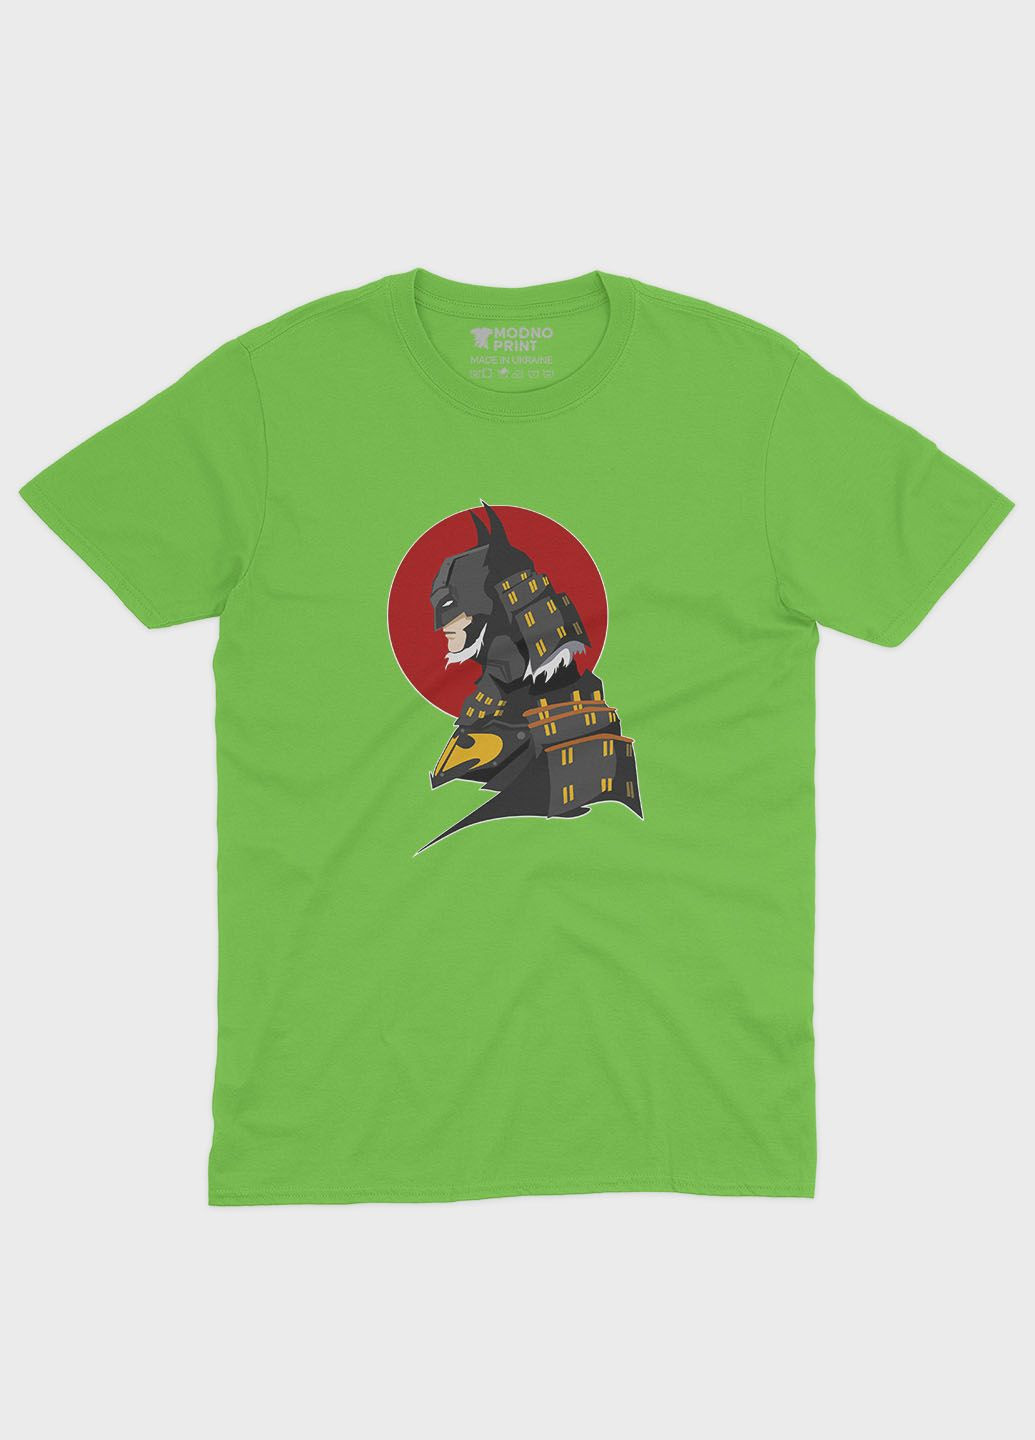 Салатовая демисезонная футболка для мальчика с принтом супергероя - бэтмен (ts001-1-kiw-006-003-028-b) Modno